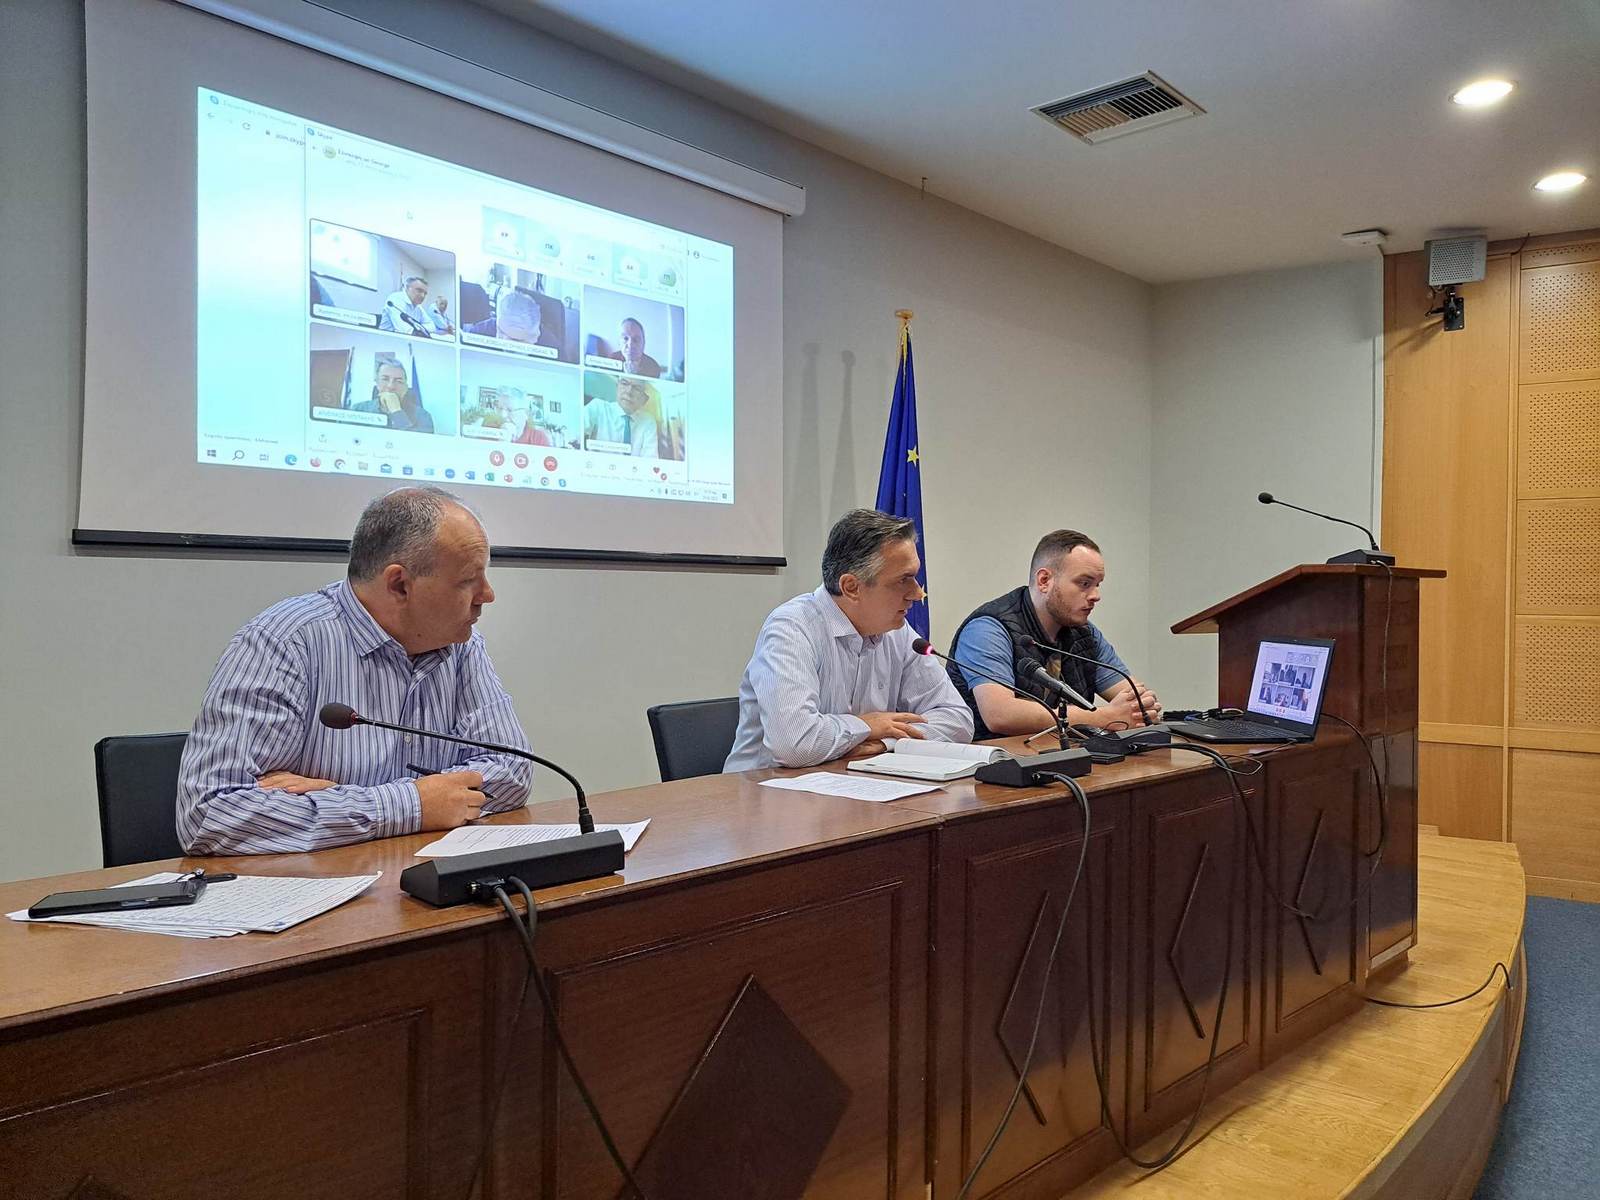 Γ. Κασαπίδης: Άμεση αποζημίωση των παραγωγών της Περιφέρειας από τις ζημιές που προκάλεσαν οι έντονες βροχοπτώσεις και τα έντονα καιρικά φαινόμενα -1-